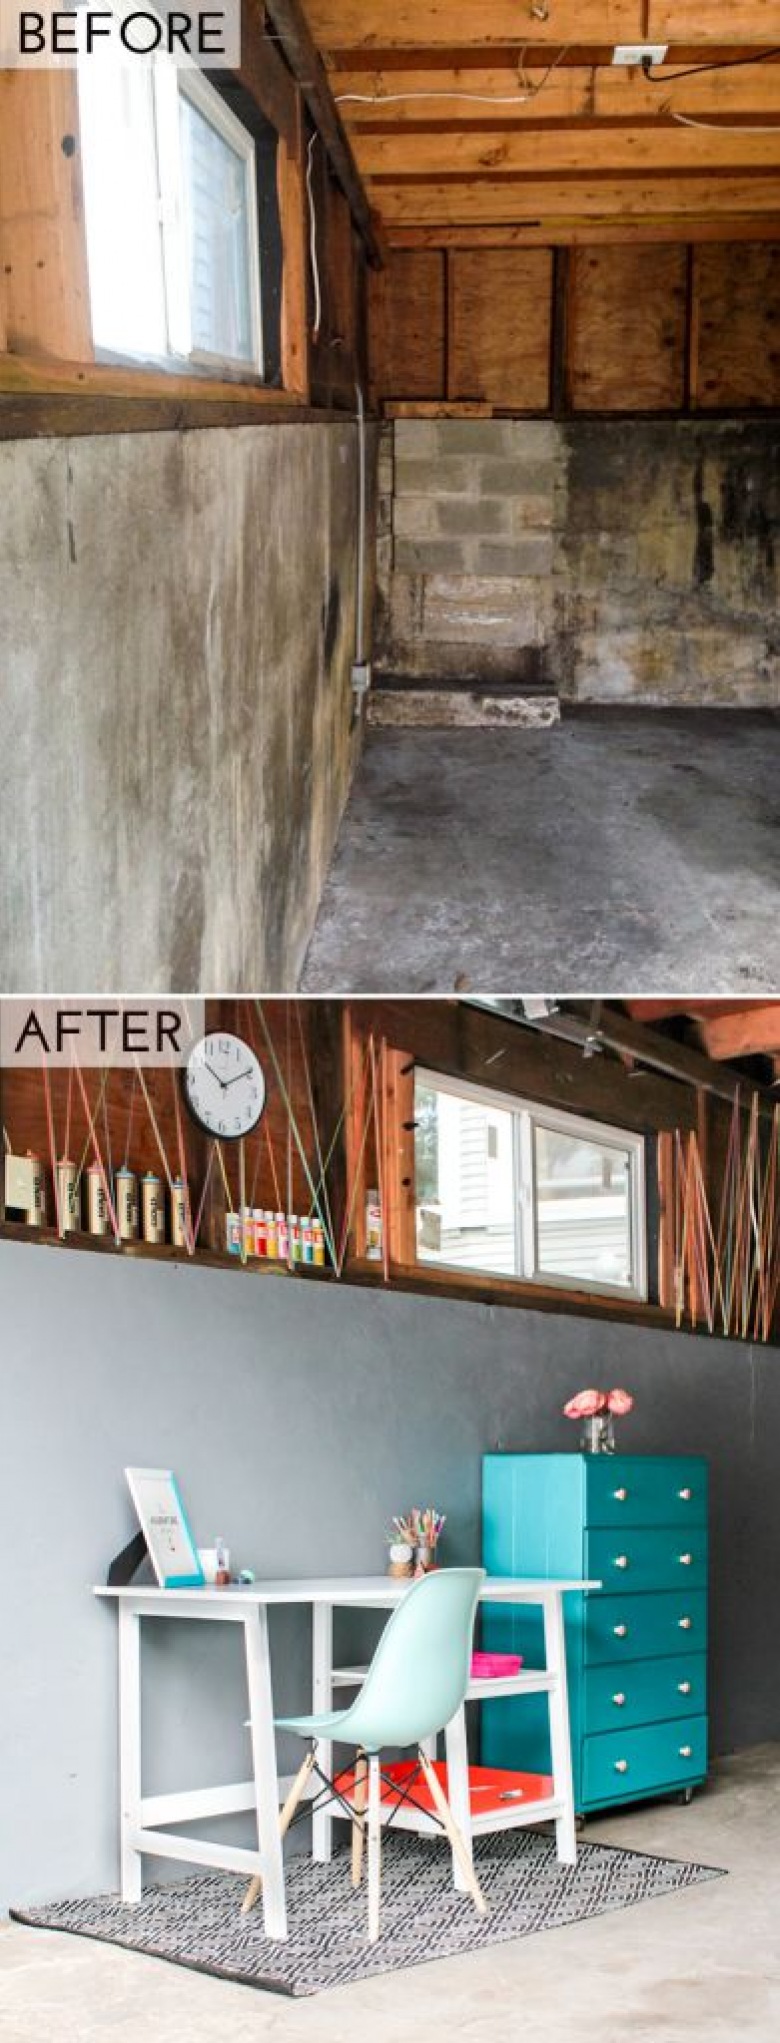 Garaż before & after, czyli jak maksymalnie inspirująco wykorzystać potencjał pomieszczenia gospodarczego! (43149)